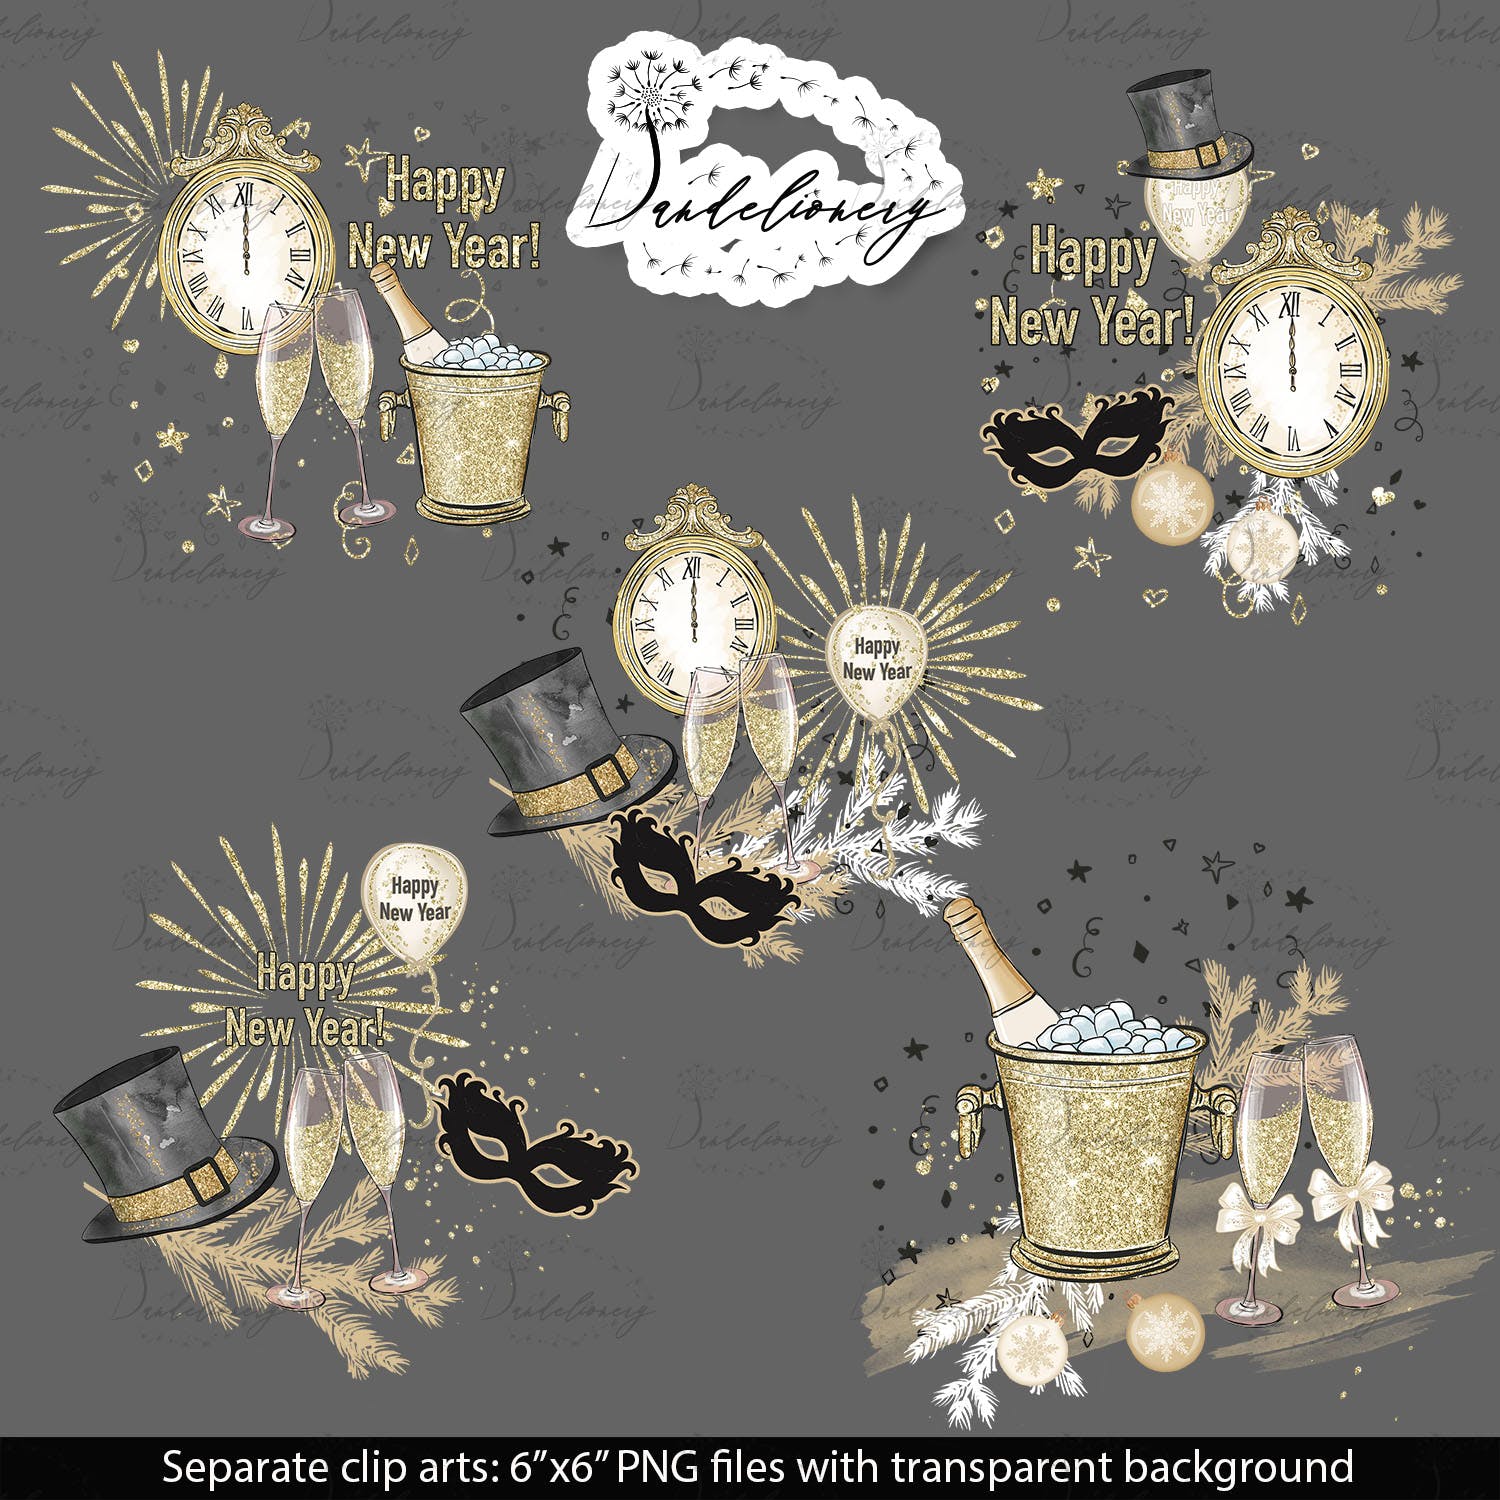 派对时光主题水彩手绘图案蚂蚁素材精选设计素材 Party Time design插图(4)